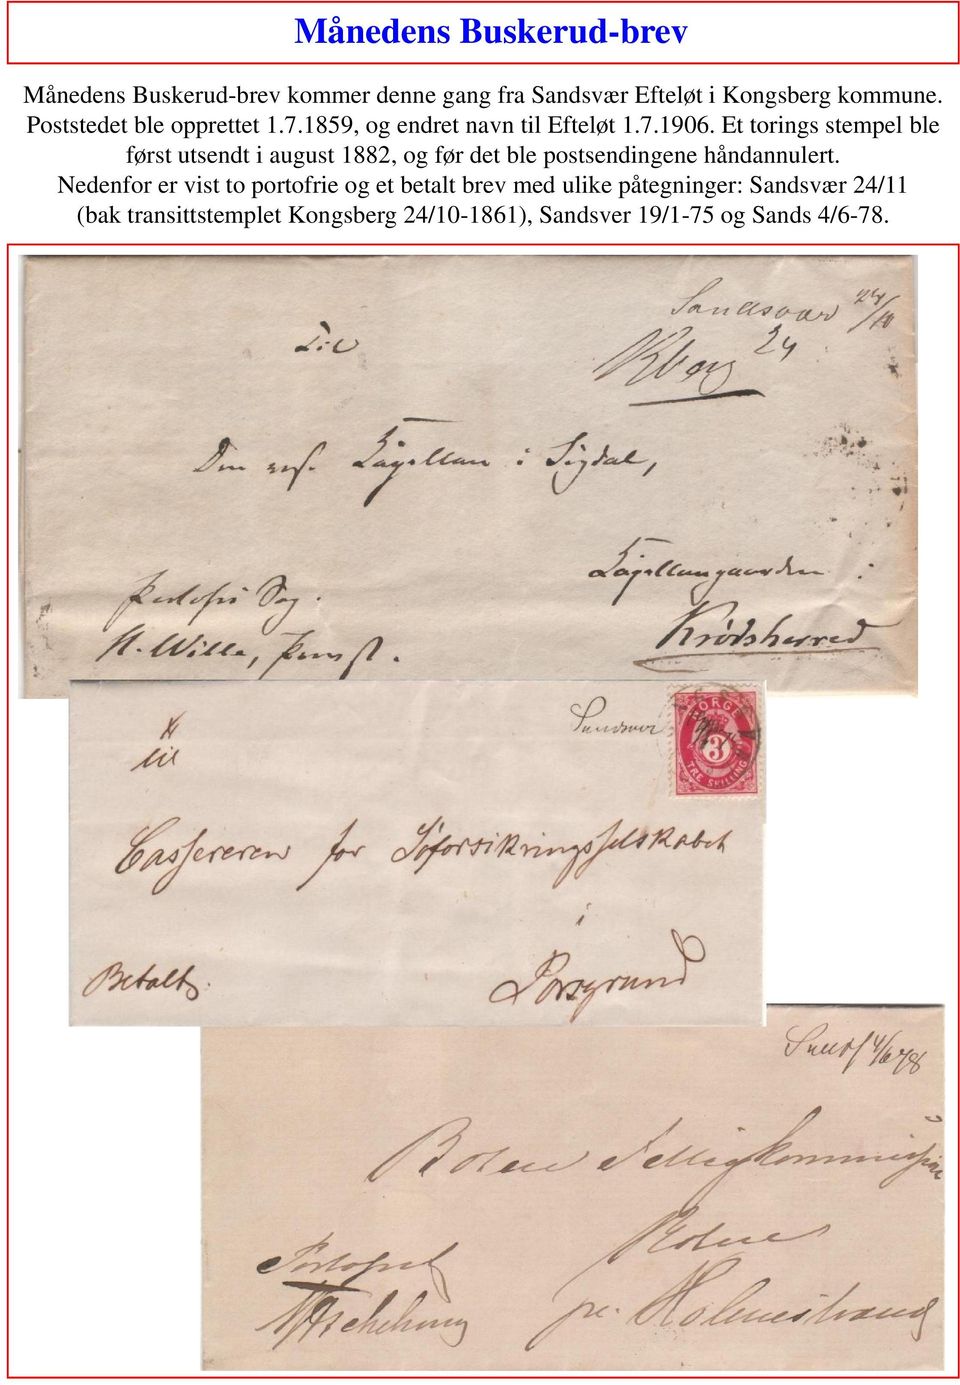 Et torings stempel ble først utsendt i august 1882, og før det ble postsendingene håndannulert.